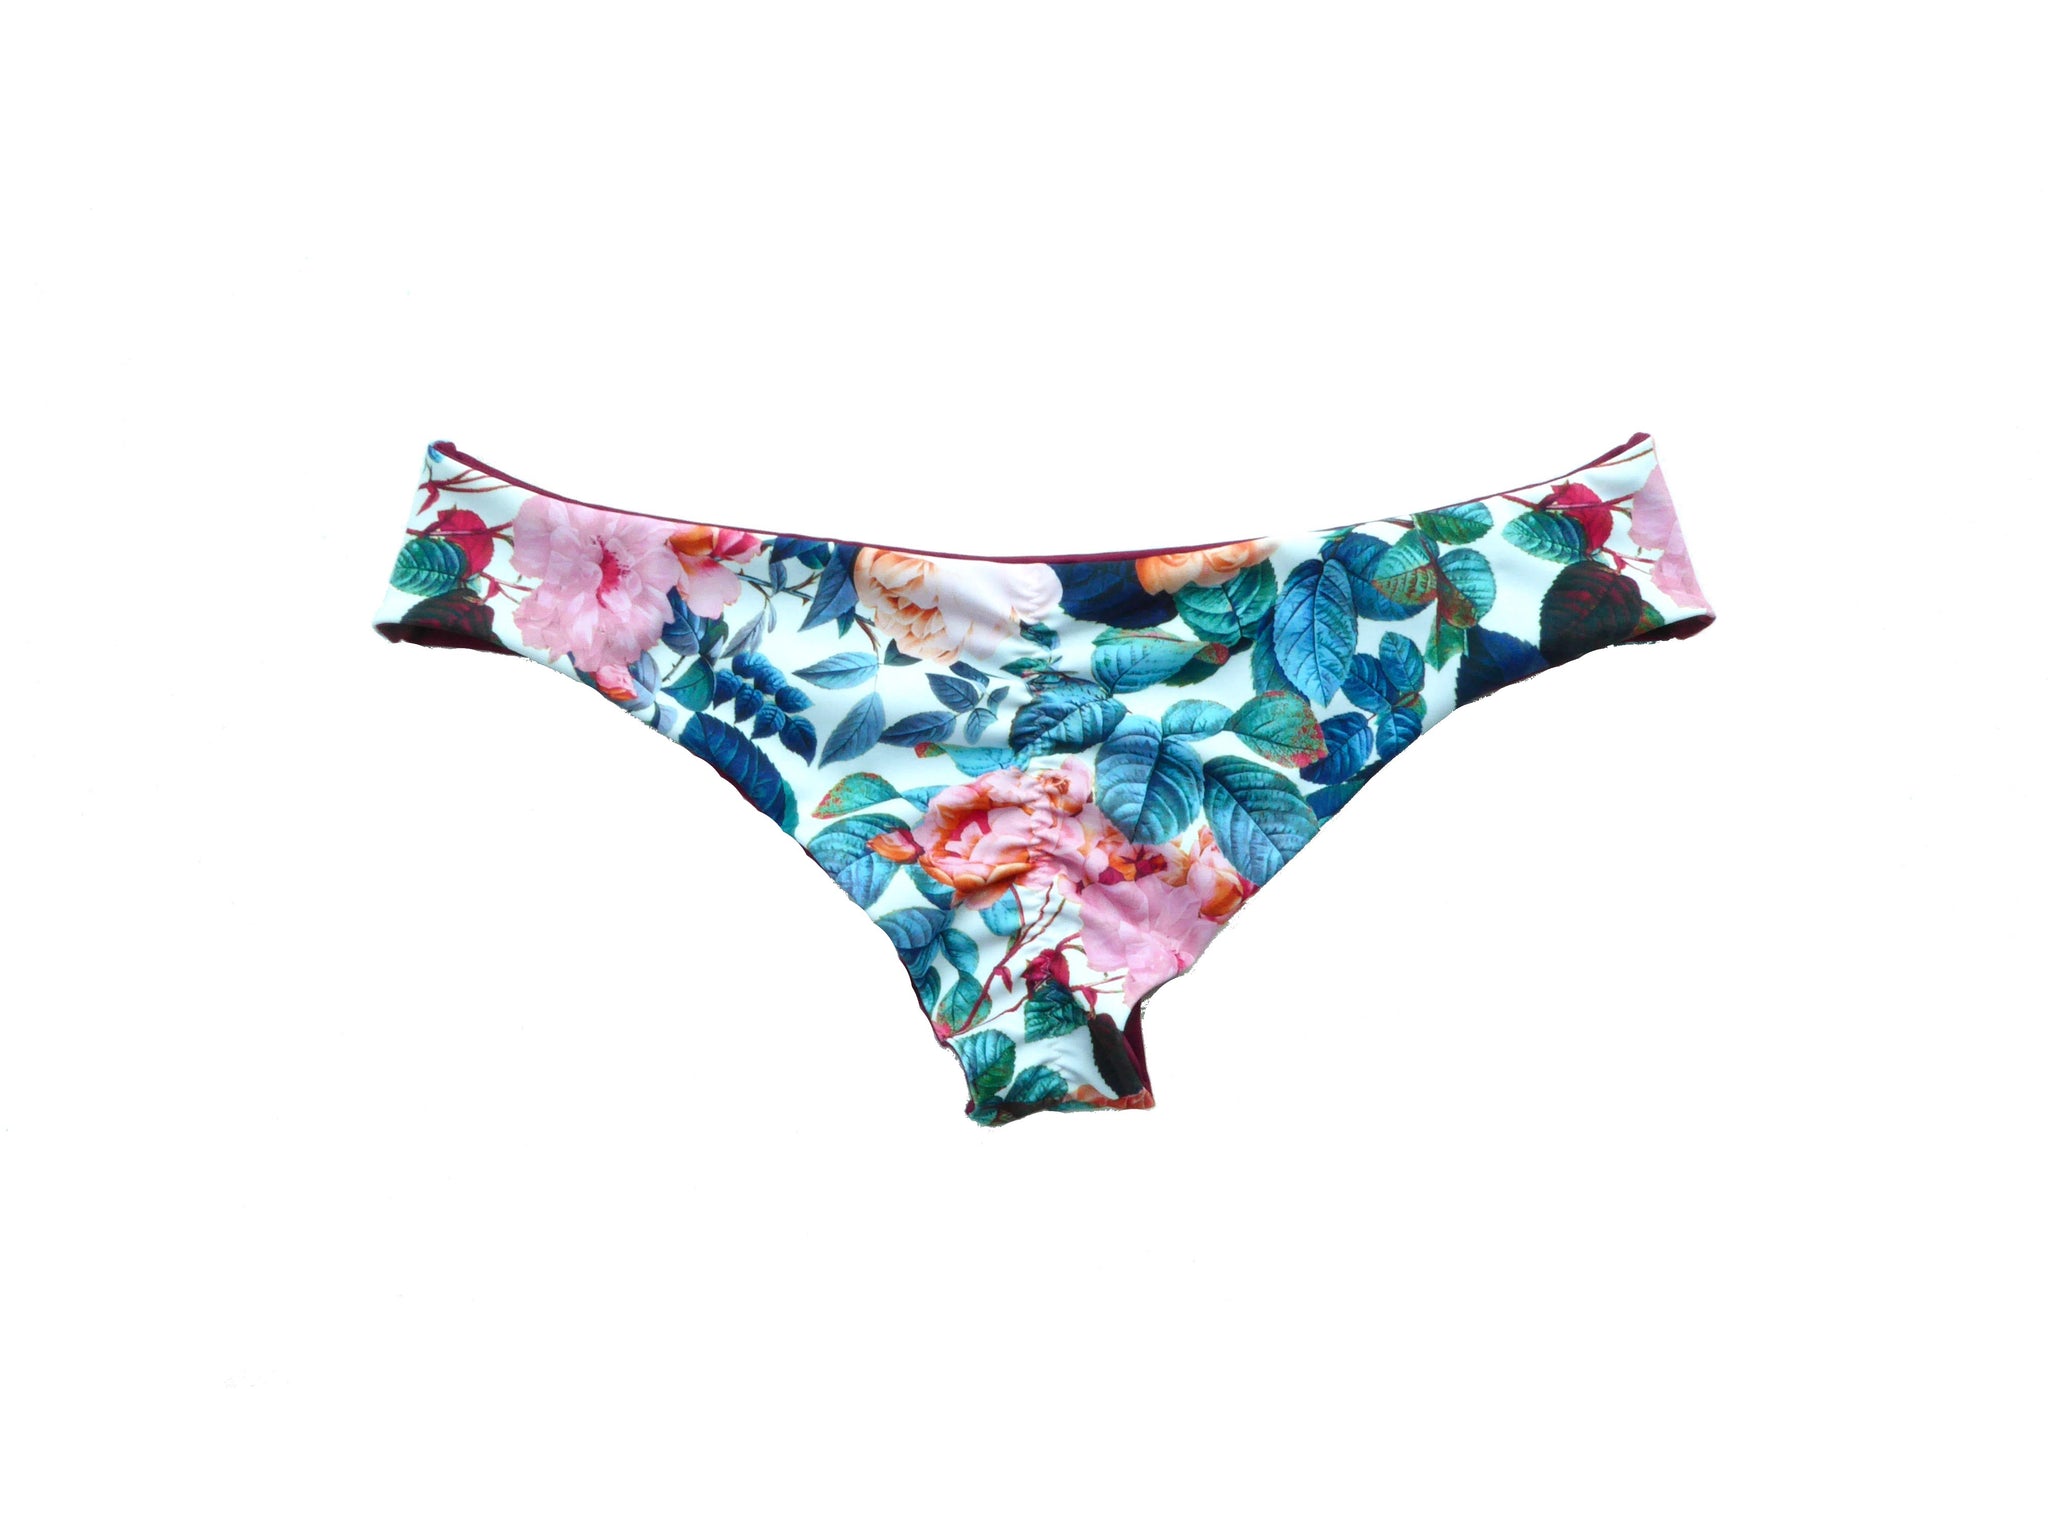 Buy Blue Floral Bikini Bottoms | Seamless Bikini | Low Cut Bikini ...